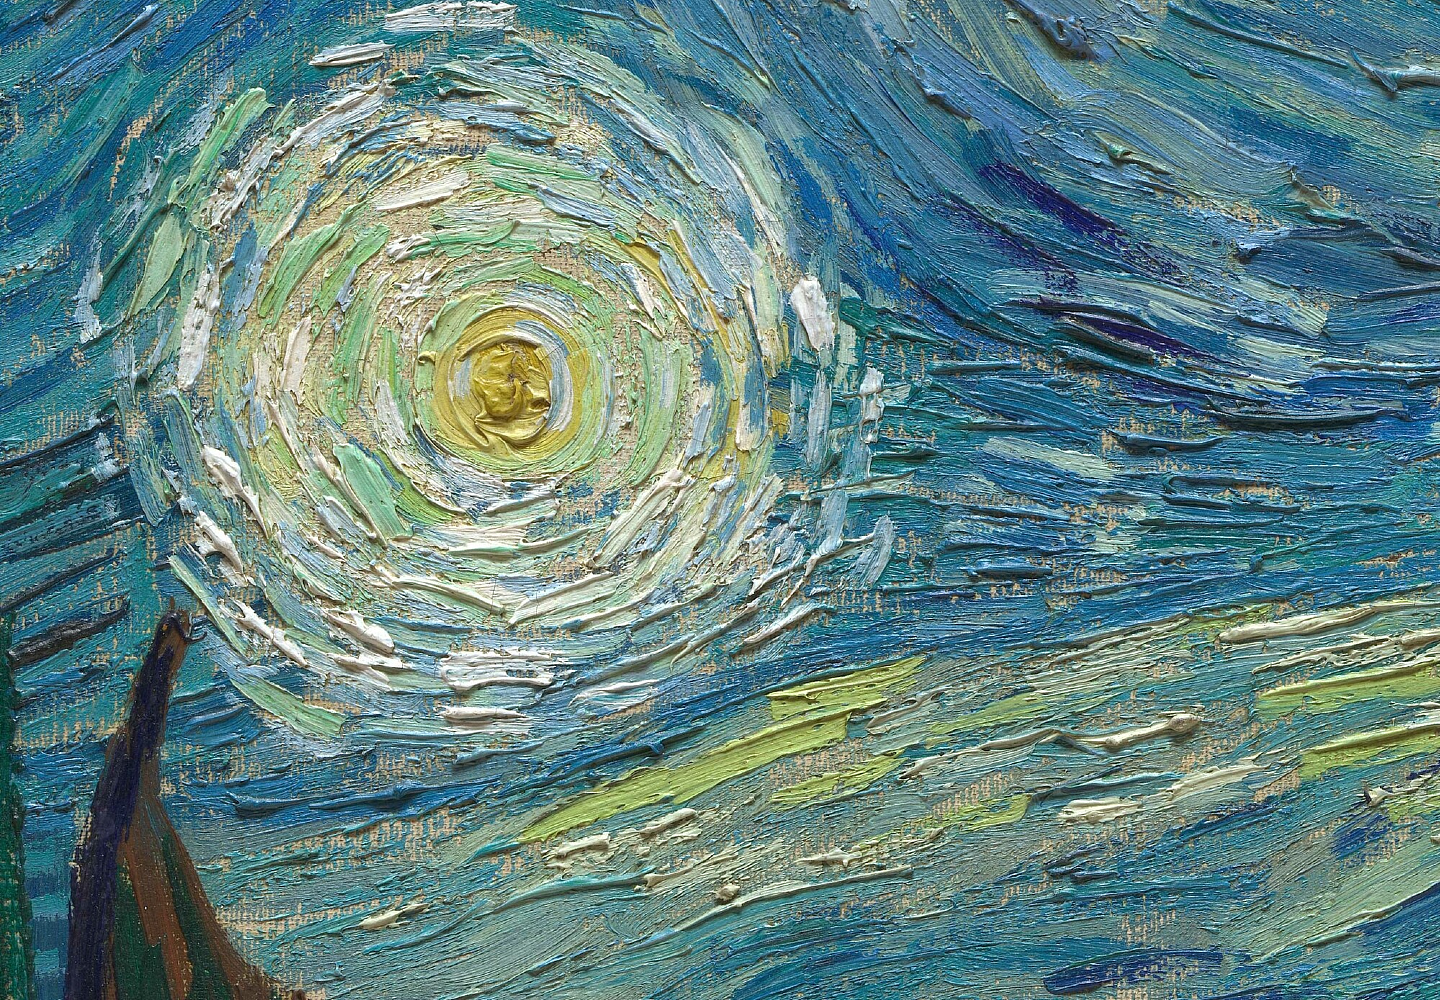 Virtual Views: Van Gogh’s Starry Night, a Live Q&A